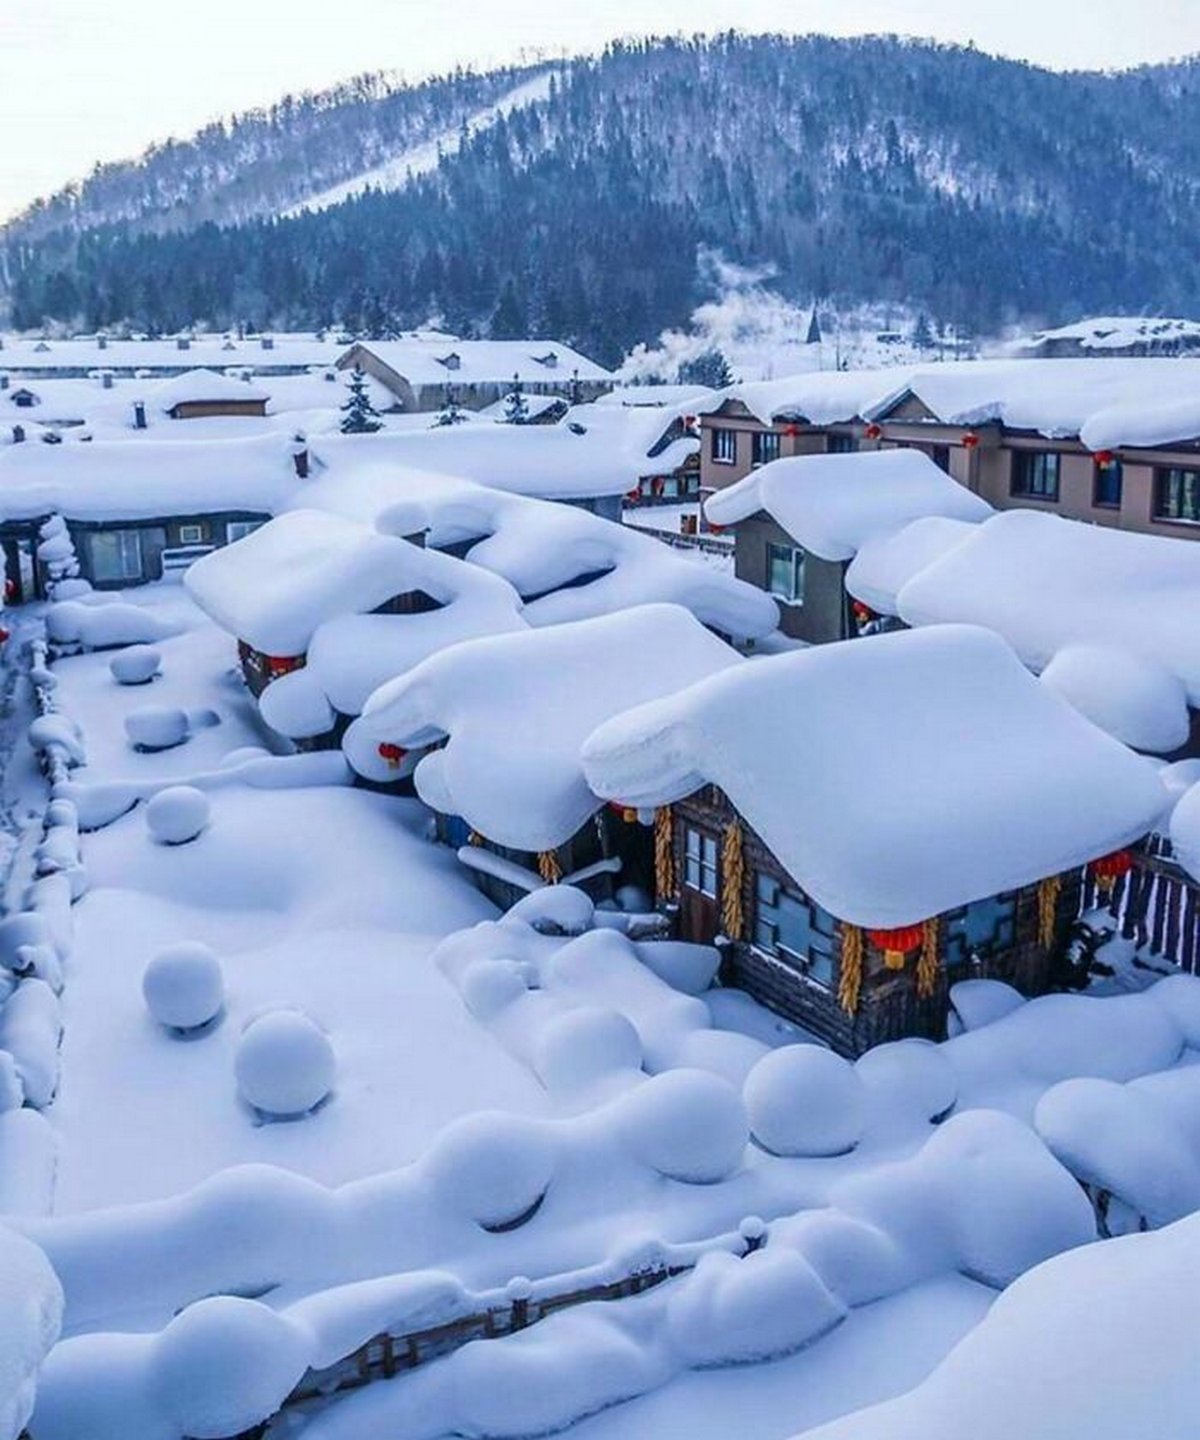 La façon dont la neige s'est accumulée sur ces maisons